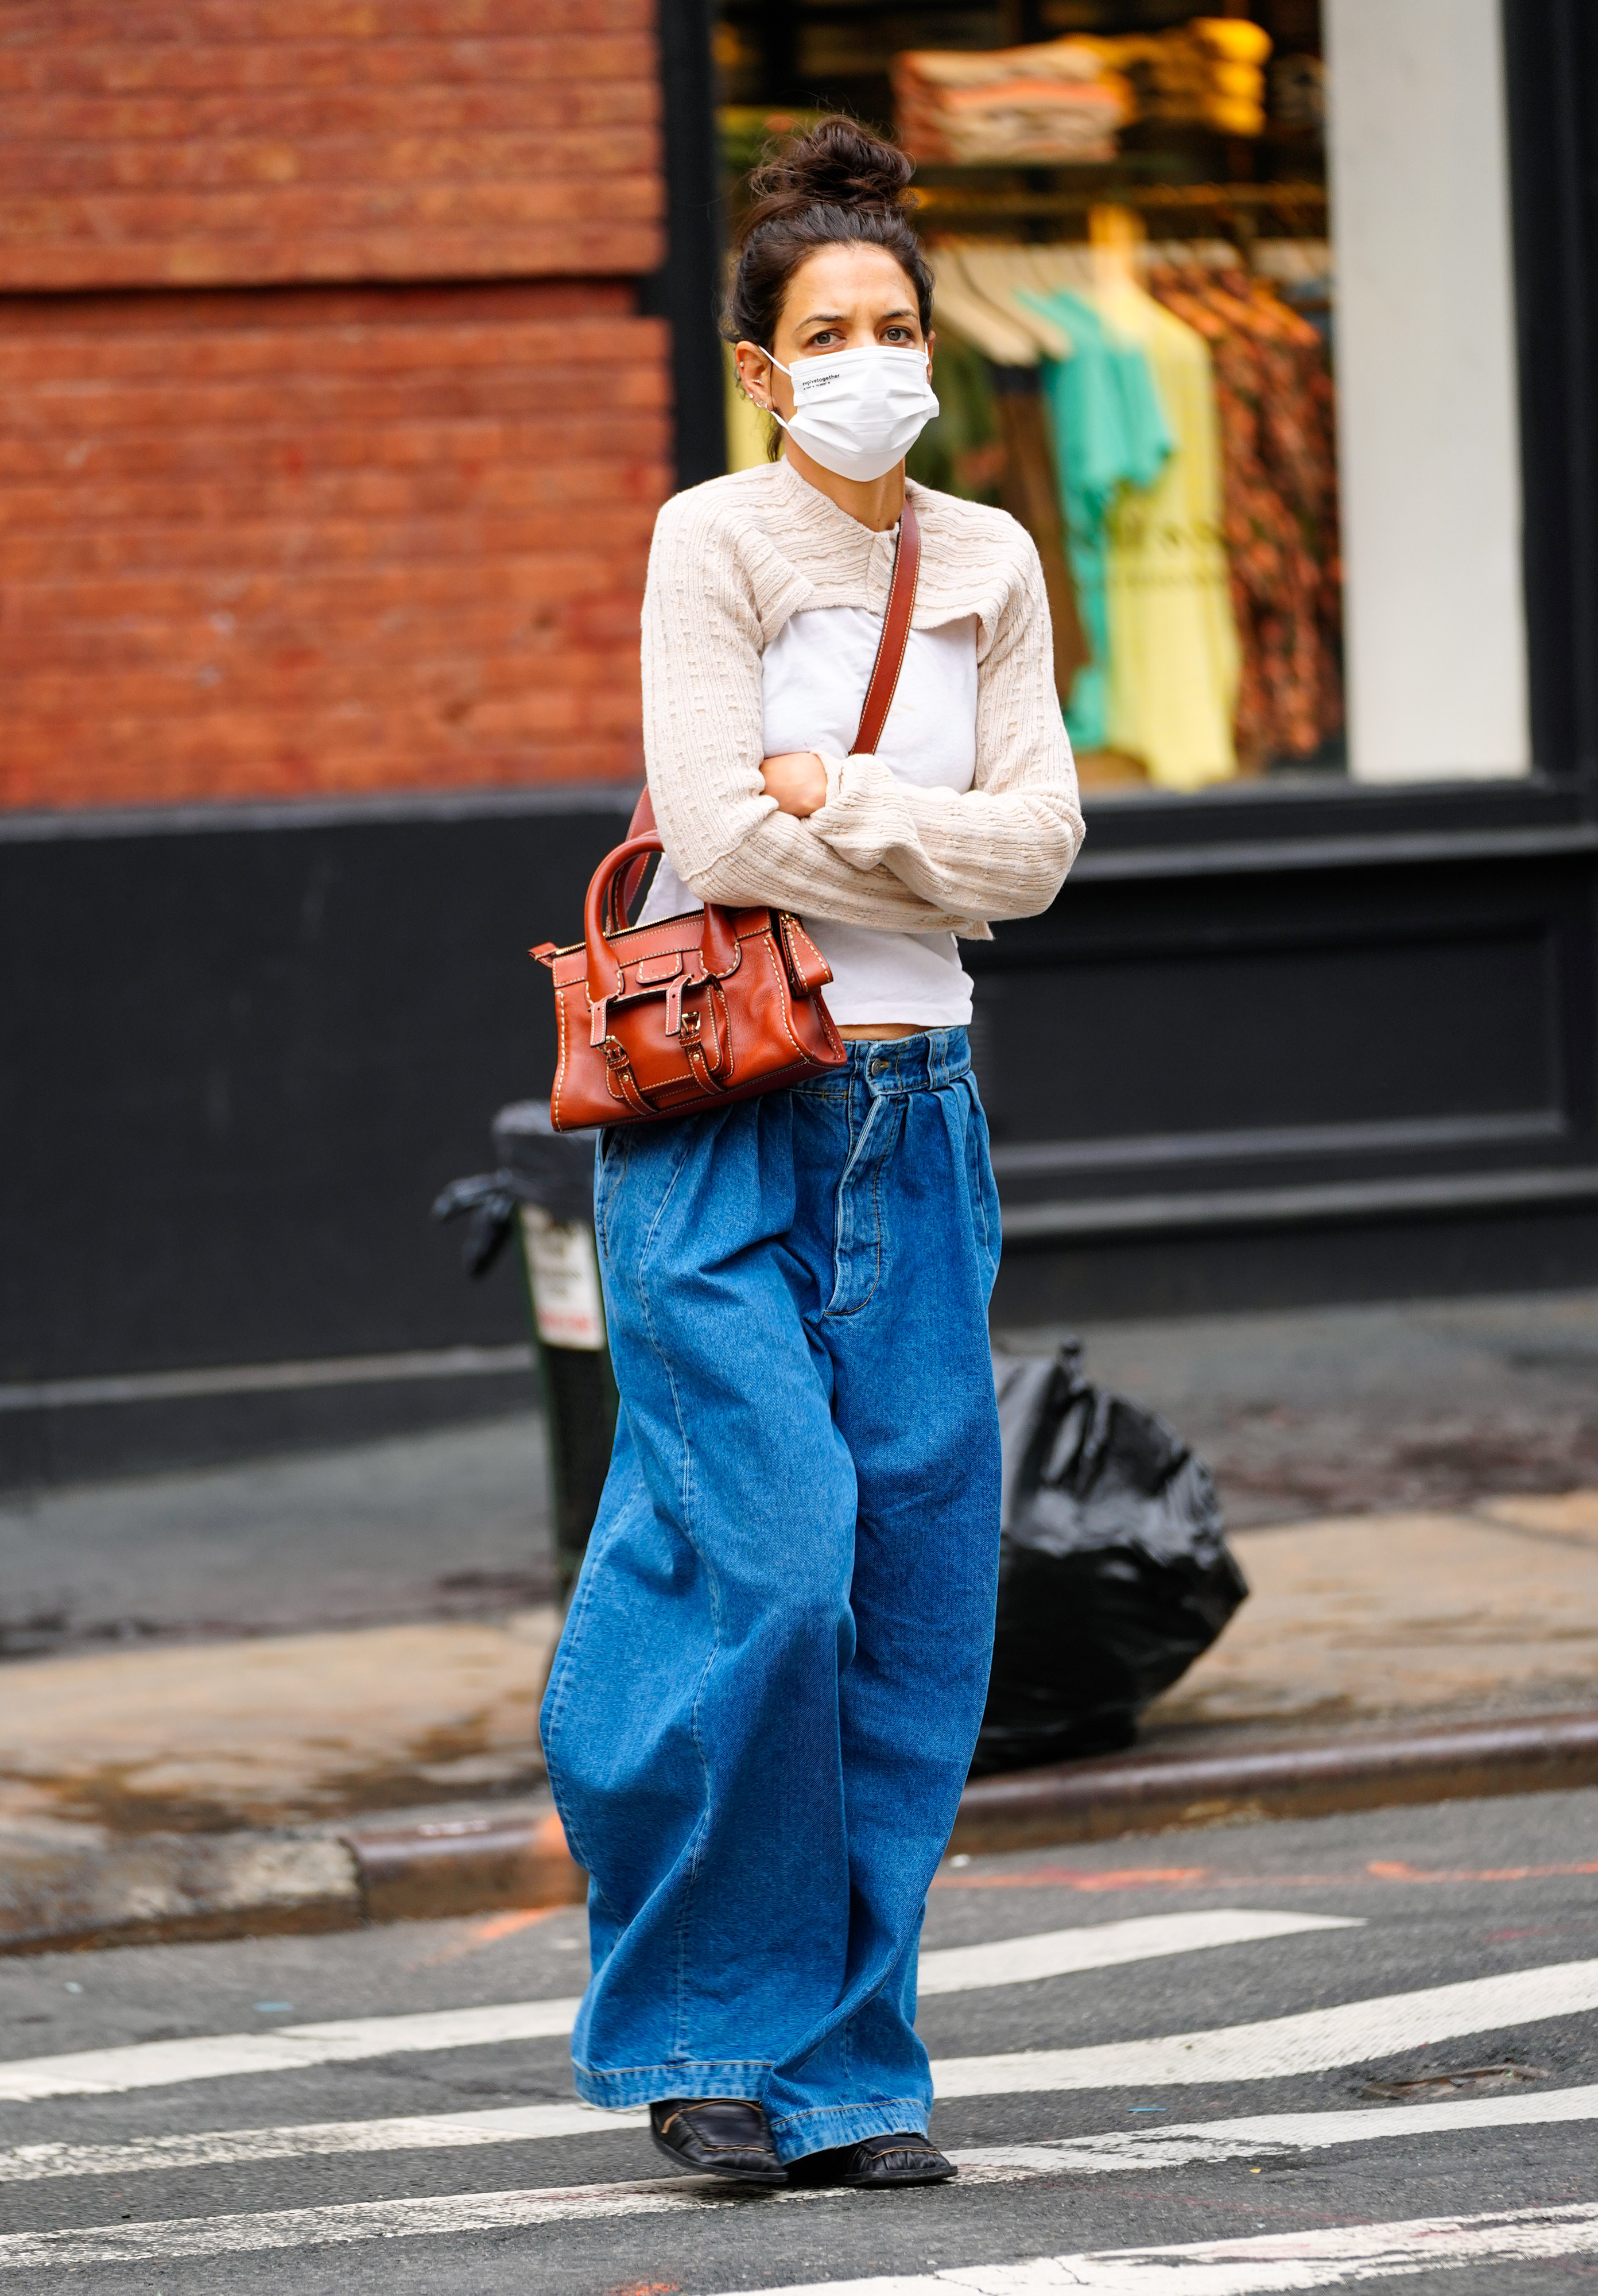 Katie Holmes fue fotografiada mientras daba un paseo por las calles de Nueva York. La actriz lució un jean oversize, un sweater clarito que combinó con su tapabocas, y una cartera marrón de cuero